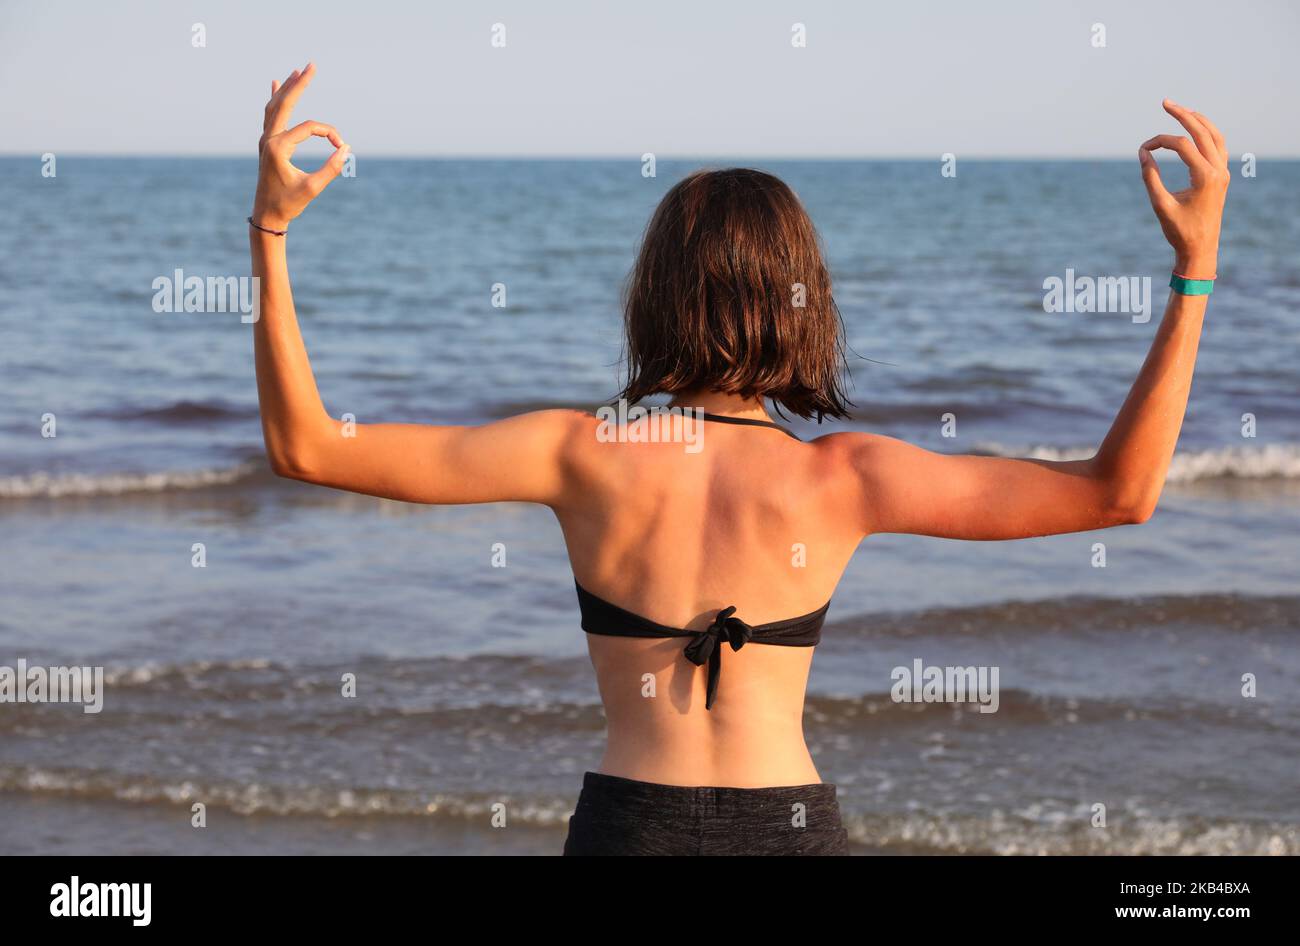 Jeune fille du dos avec la musculature développée fait OM YOGA signe au bord de la mer Banque D'Images